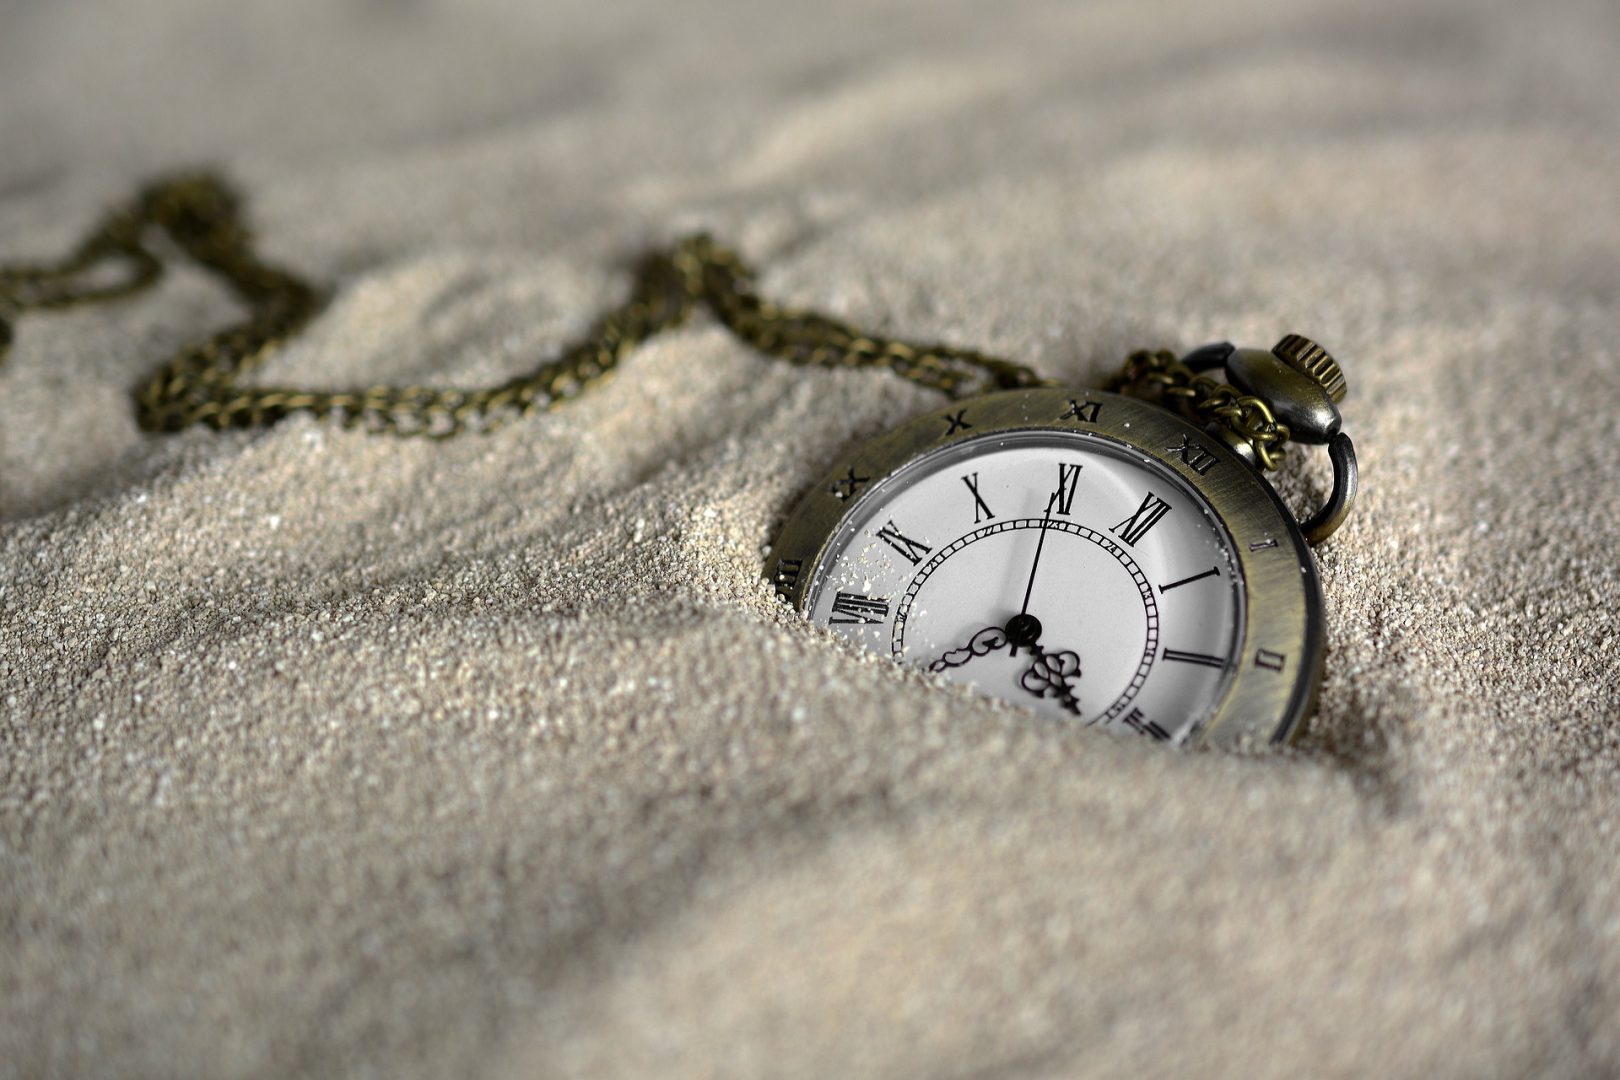 Zegarek kieszonkowy leżący na piasku